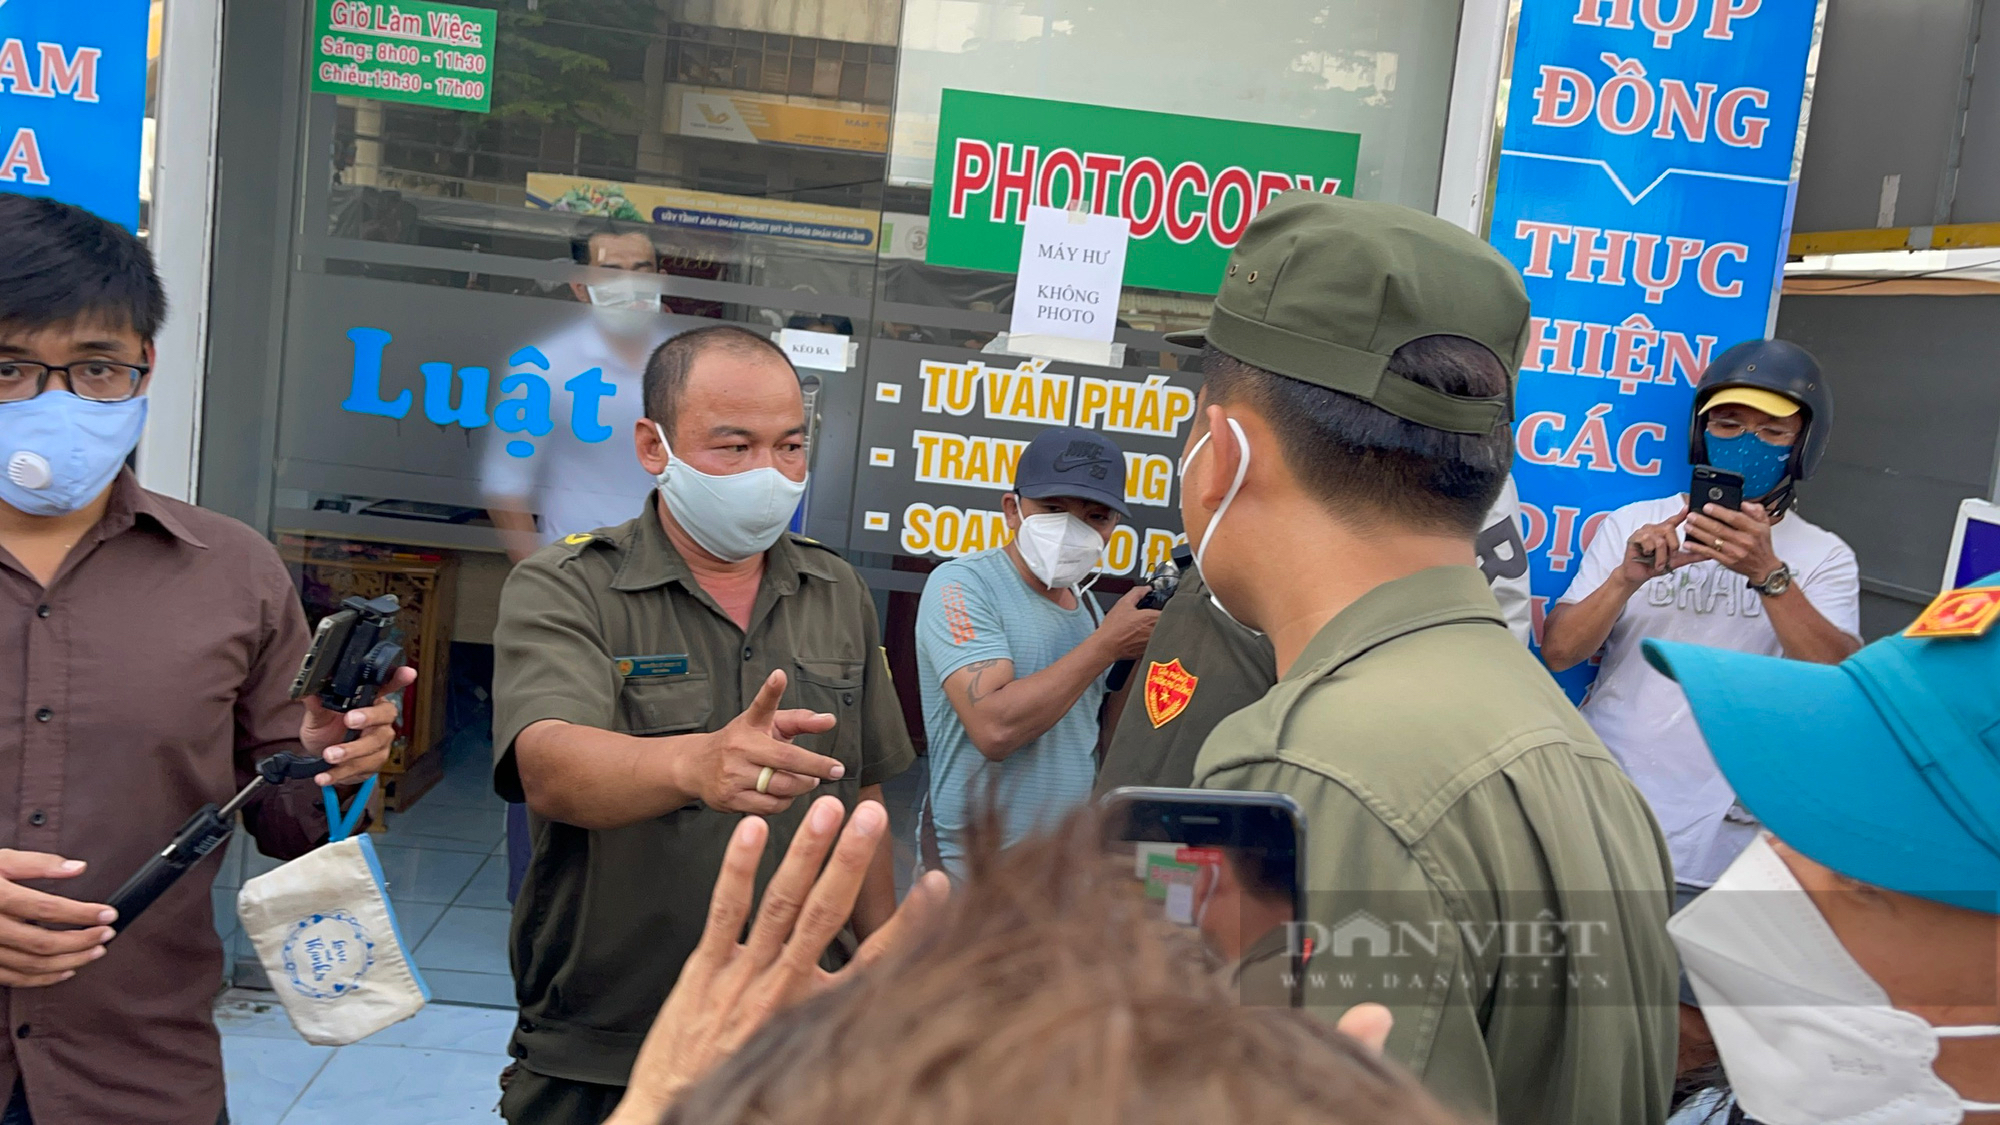 Dùng “ảnh nóng” để tống tiền bà Nguyễn Phương Hằng, nam thanh niên lãnh 1 năm tù treo - Ảnh 4.